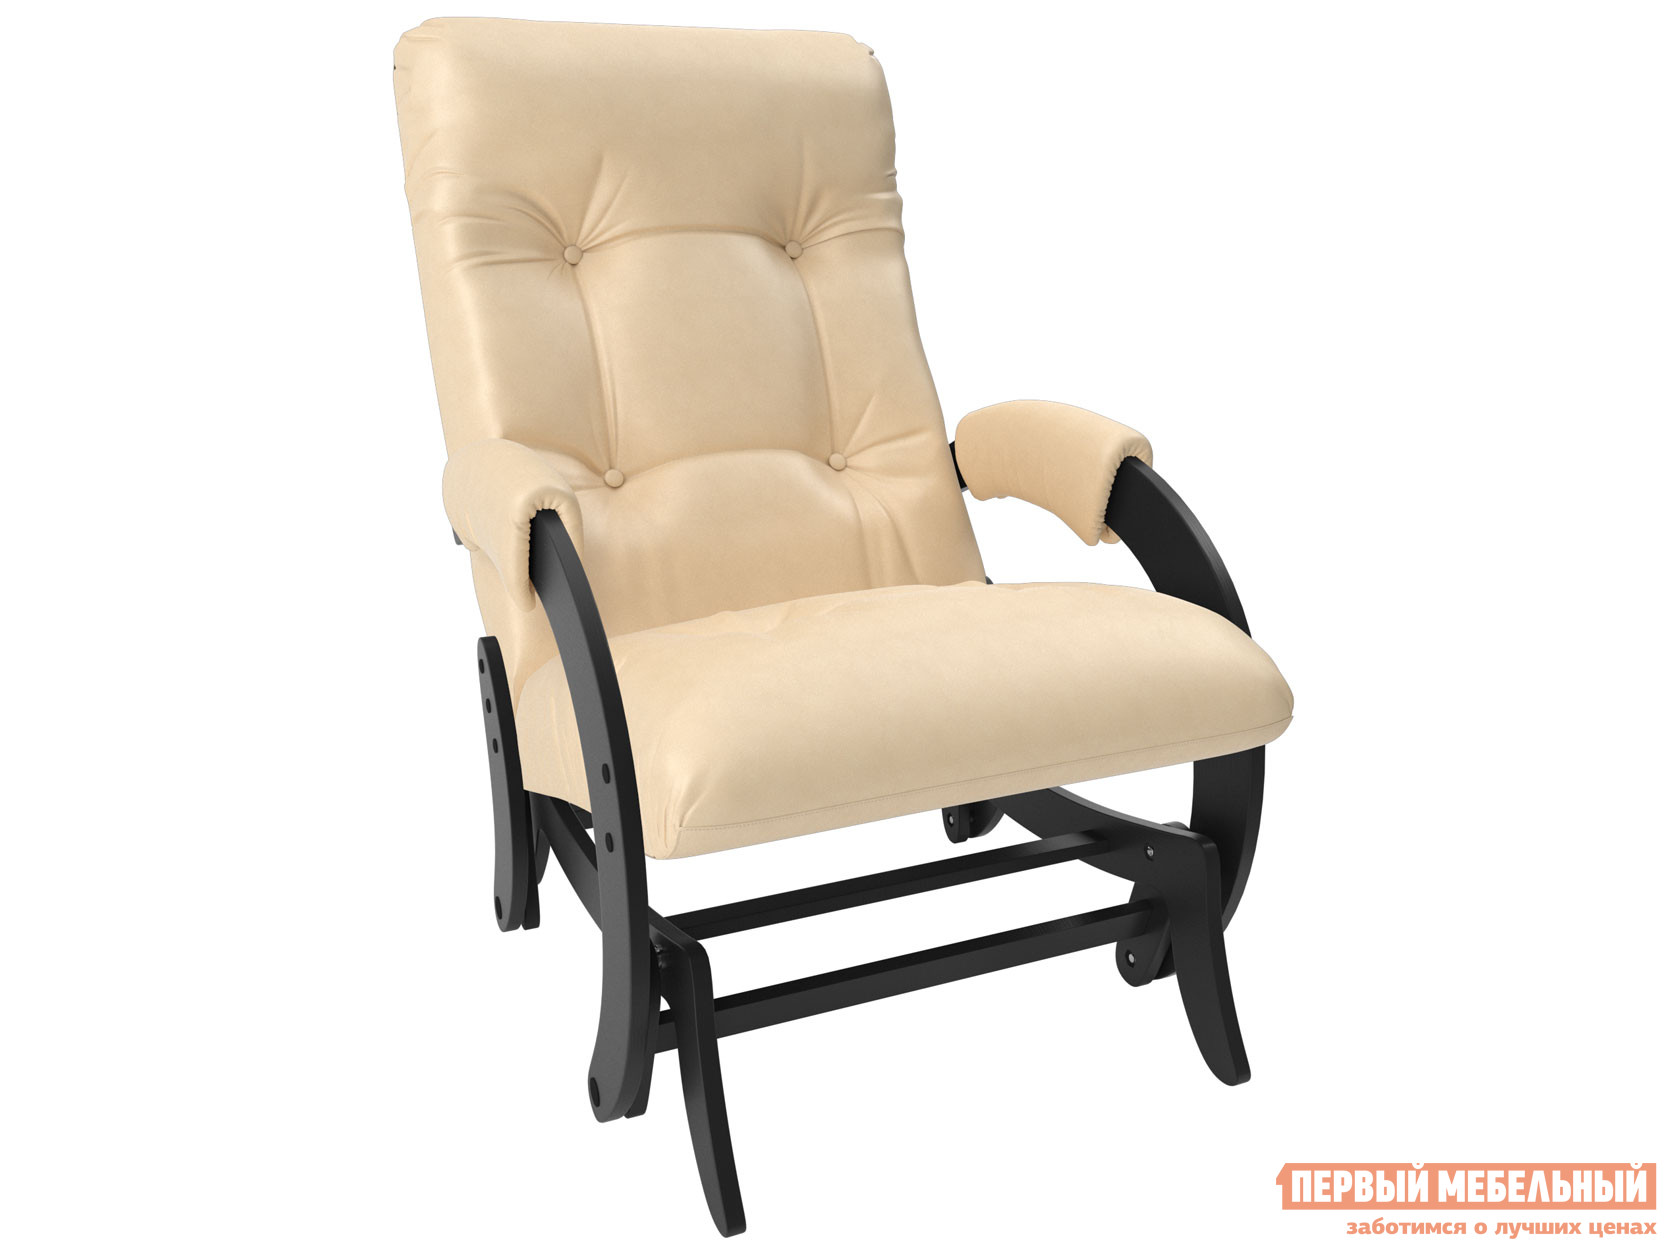 Кресло-качалка  Кресло-качалка глайдер Комфорт Модель 68 Венге, Polaris beige, иск. кожа